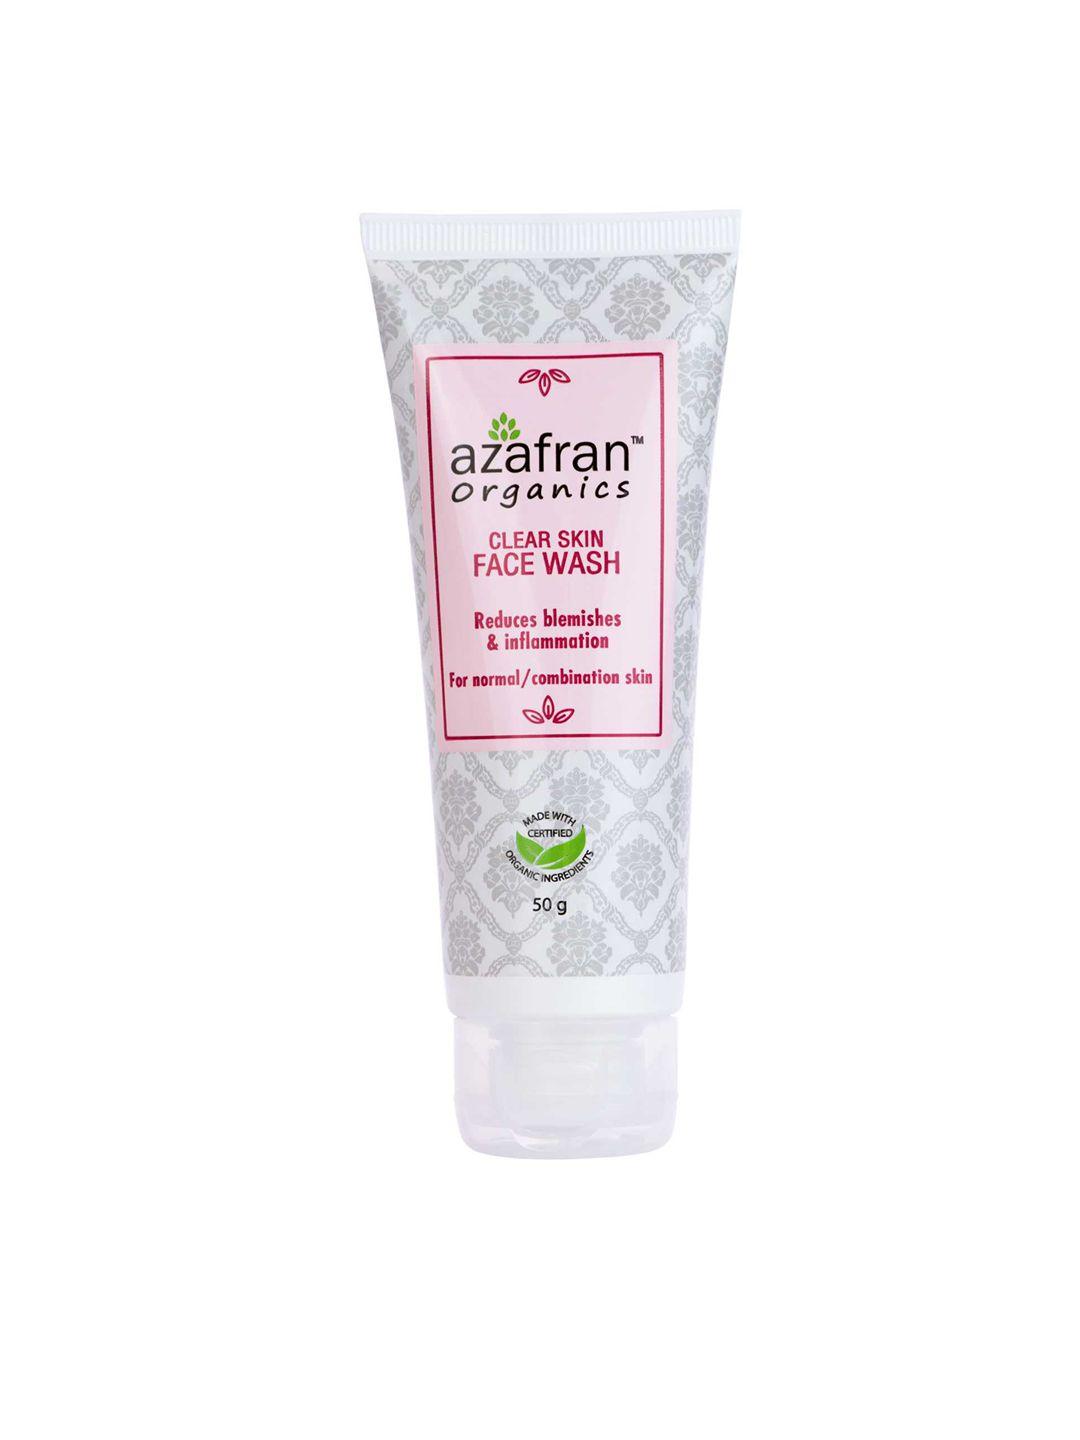 azafran clear skin face wash 50g